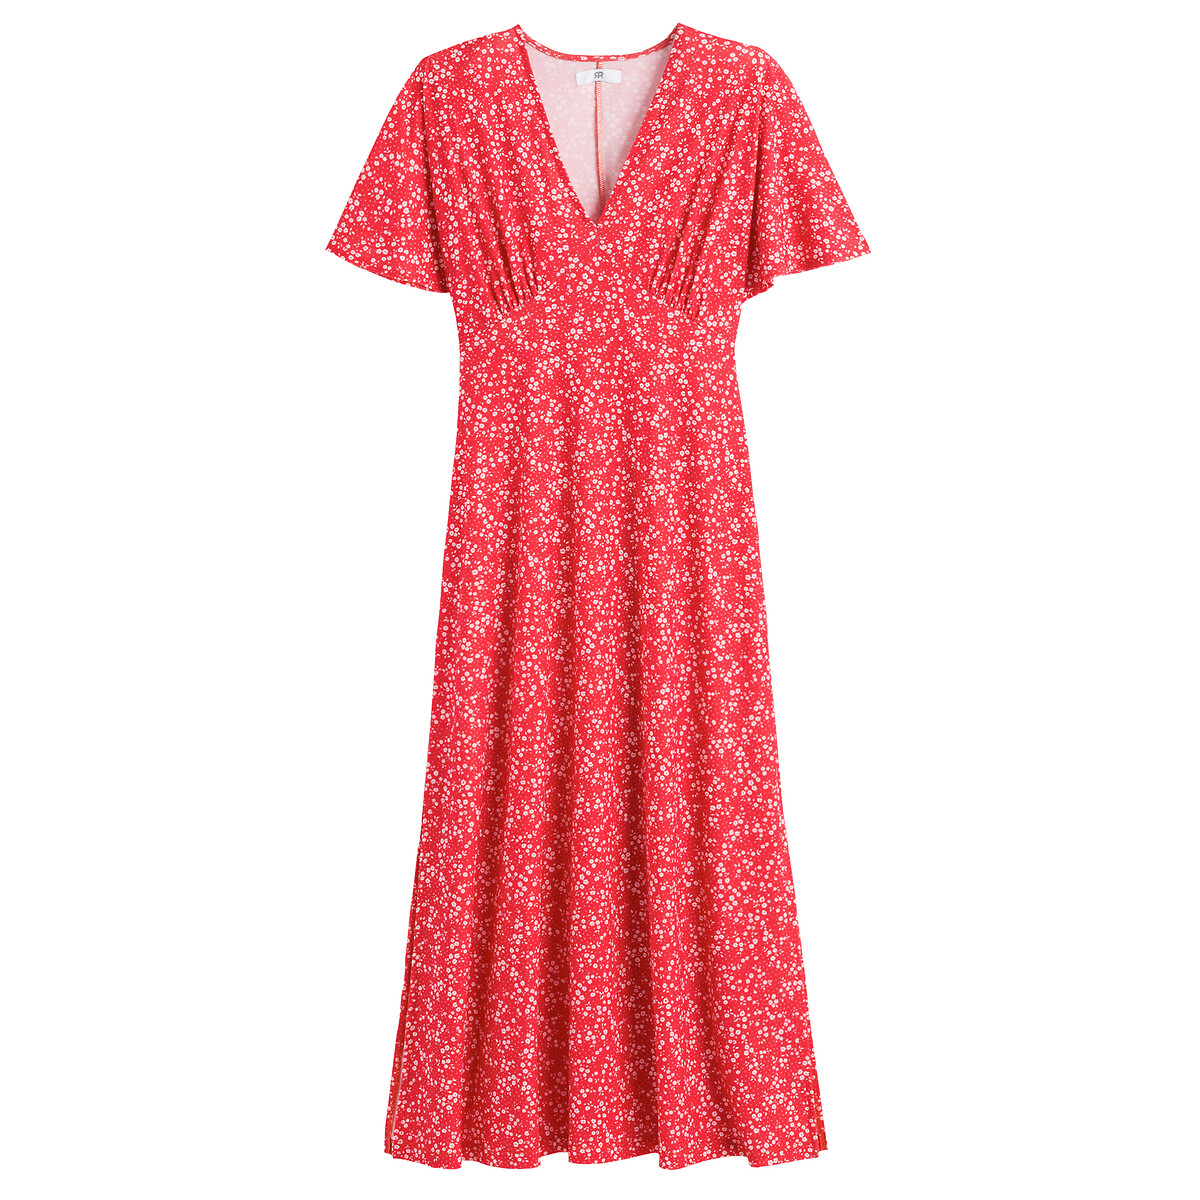 Платье Длинное расклешенное с принтом цветы 42 красный LaRedoute, размер 42 - фото 5